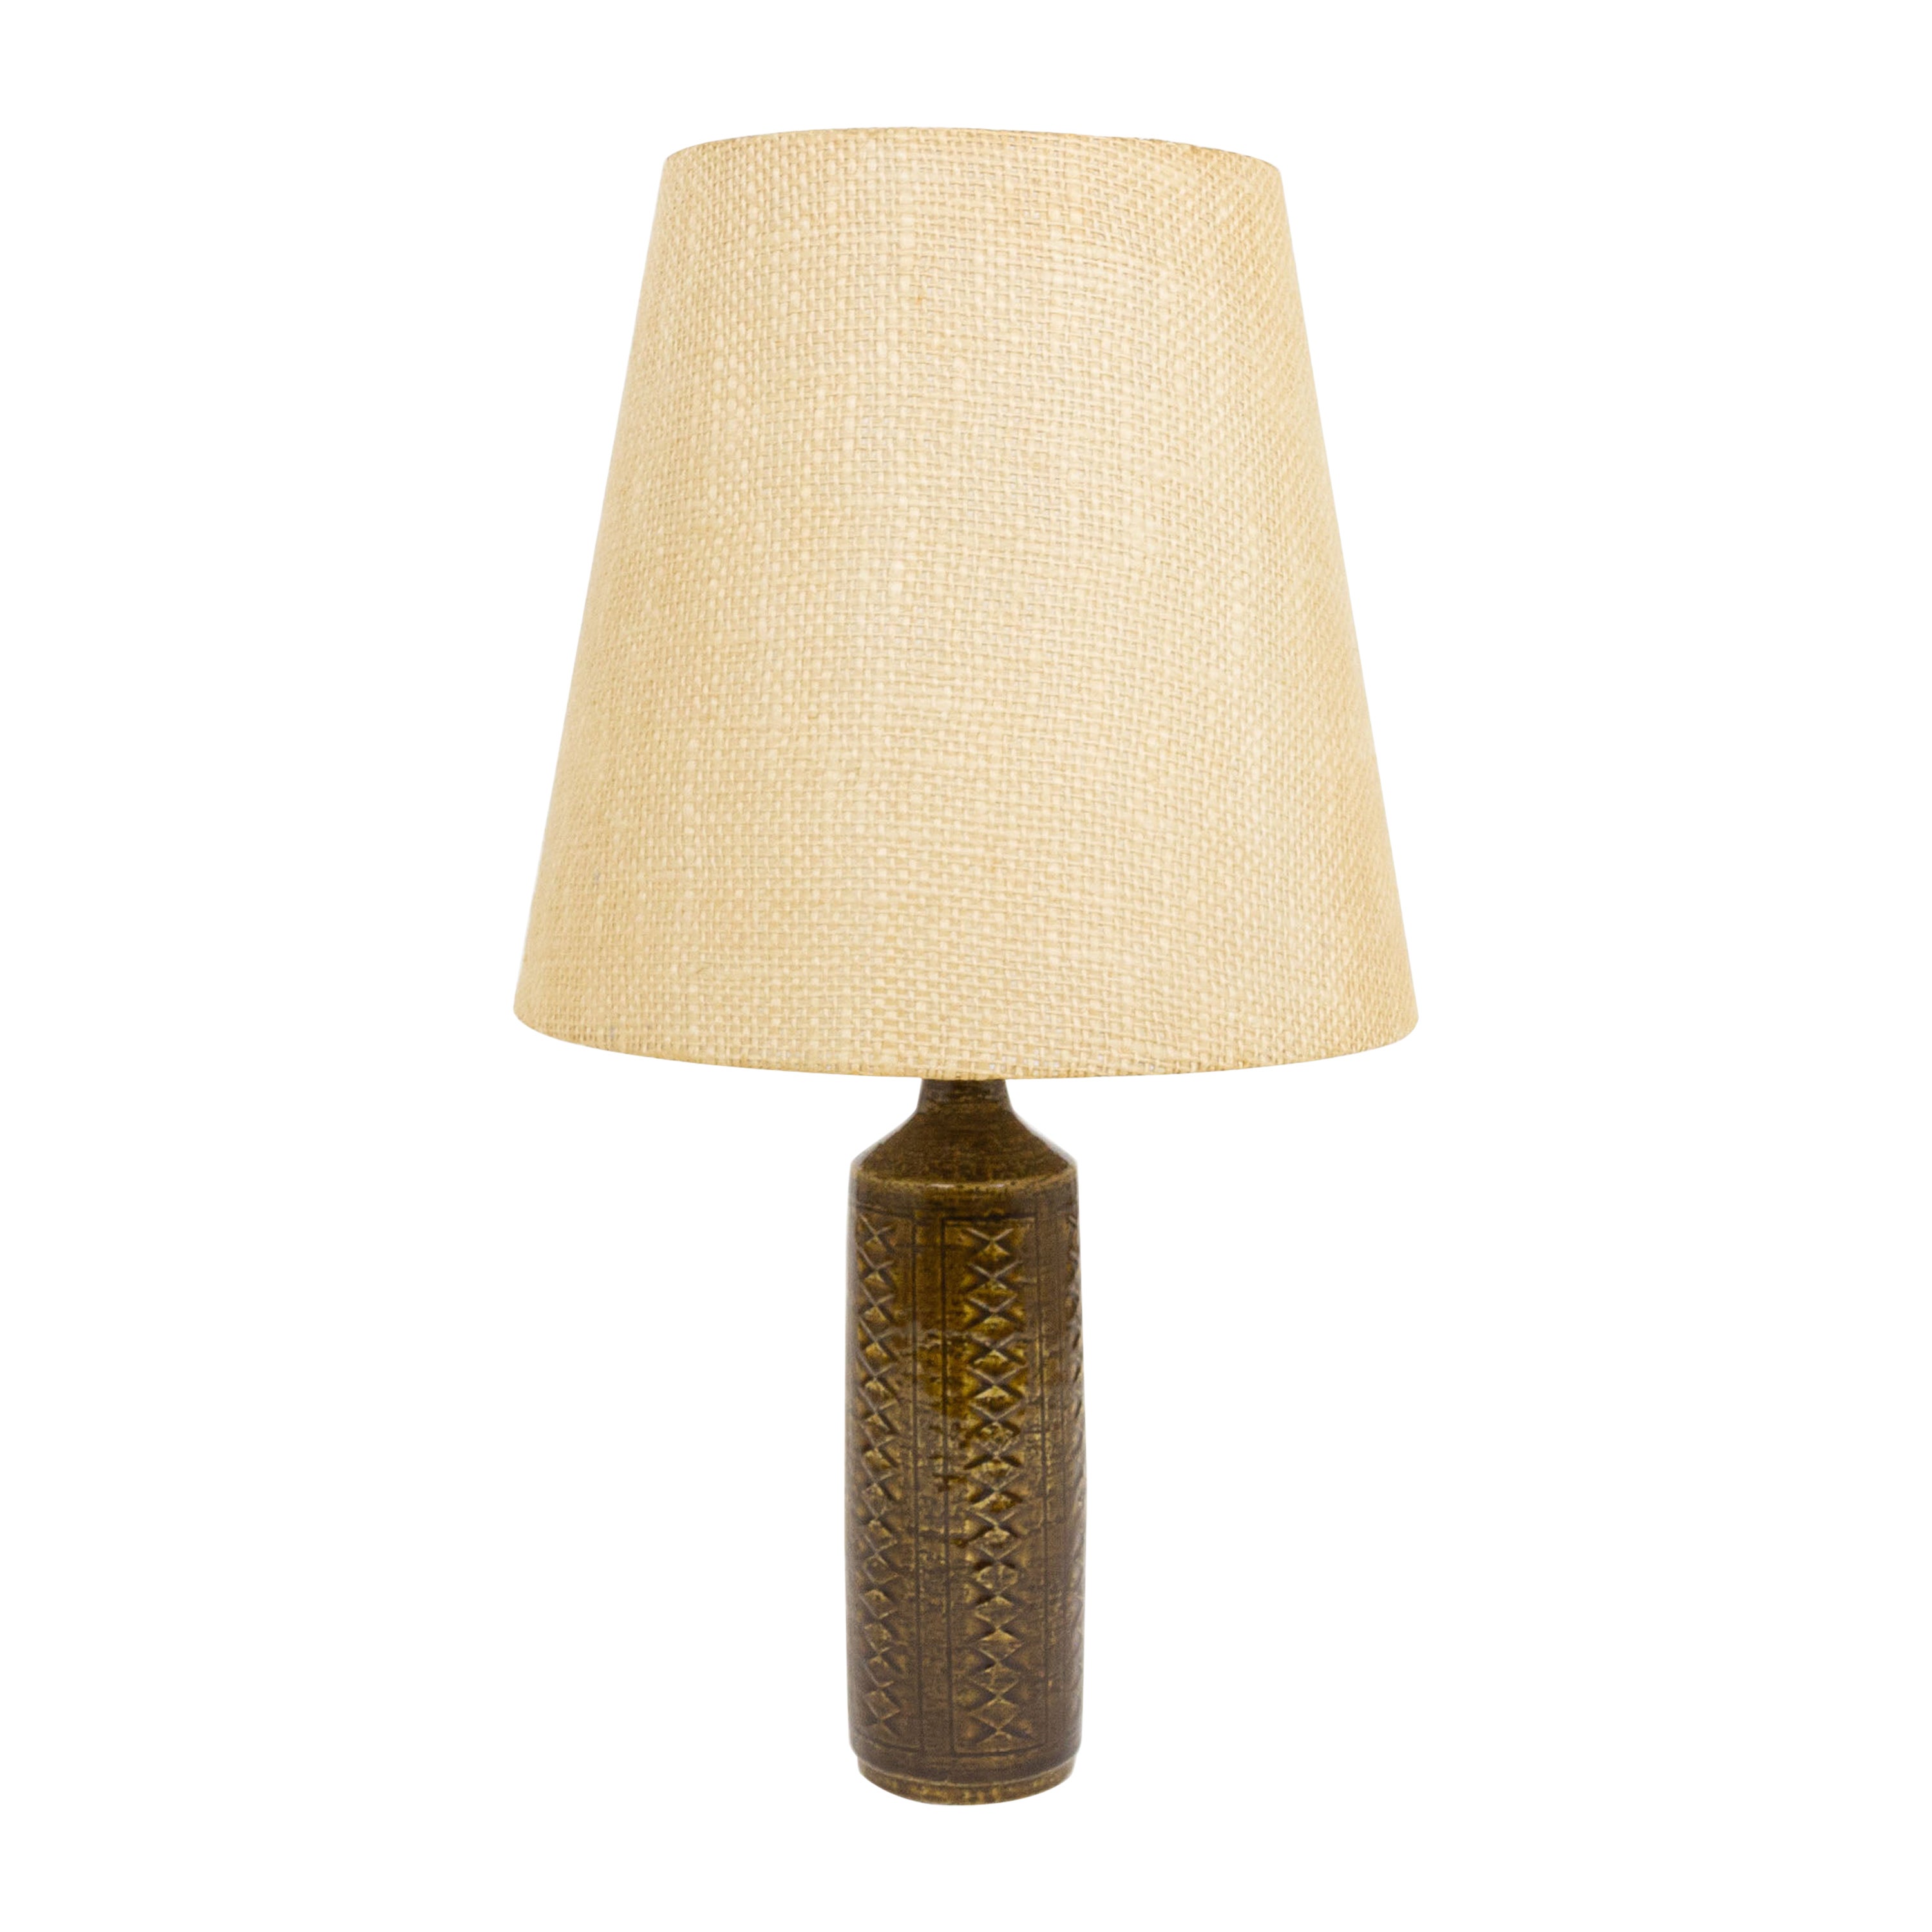 Chestnut Brown DL/27 table lamp by Linnemann-Schmidt for Palshus, 1960s For Sale